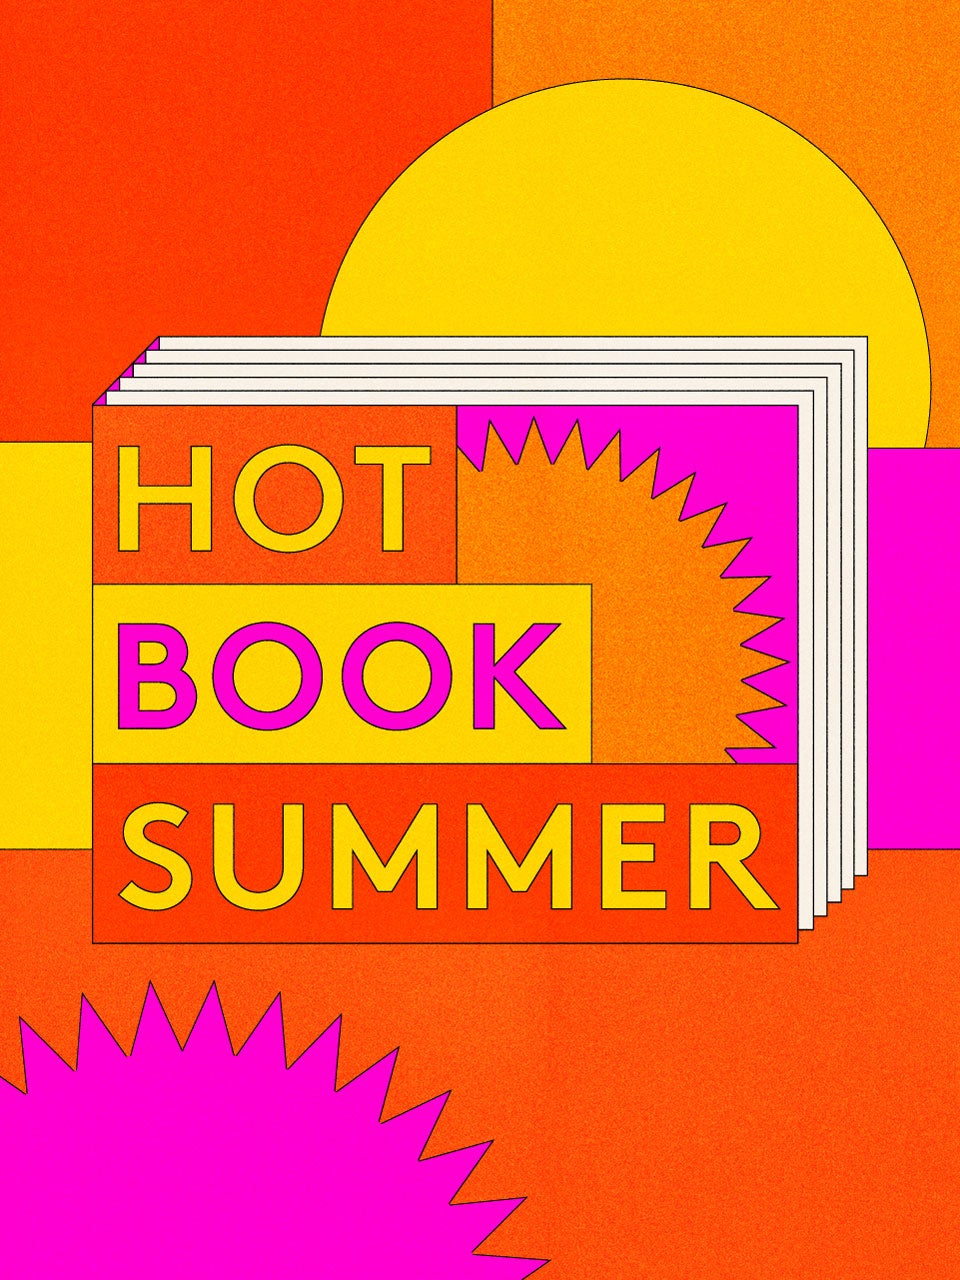 Hot Book Summer